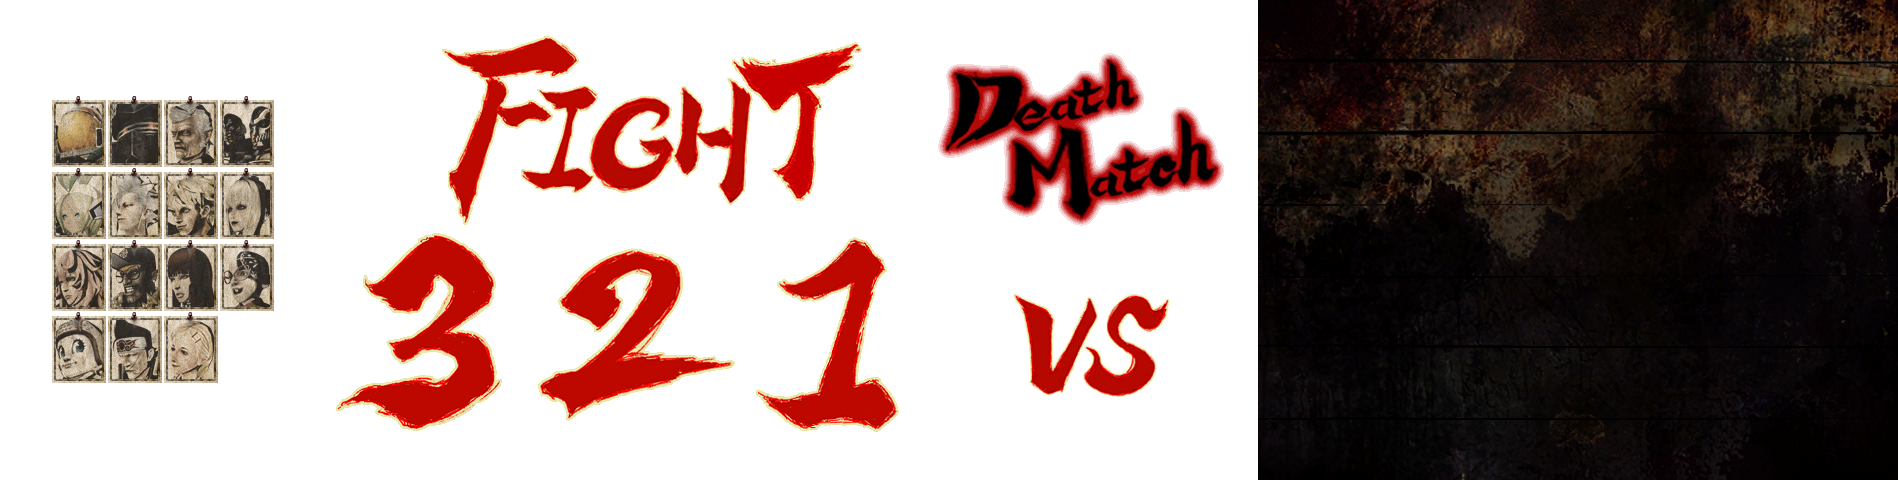 Deathmatch UI